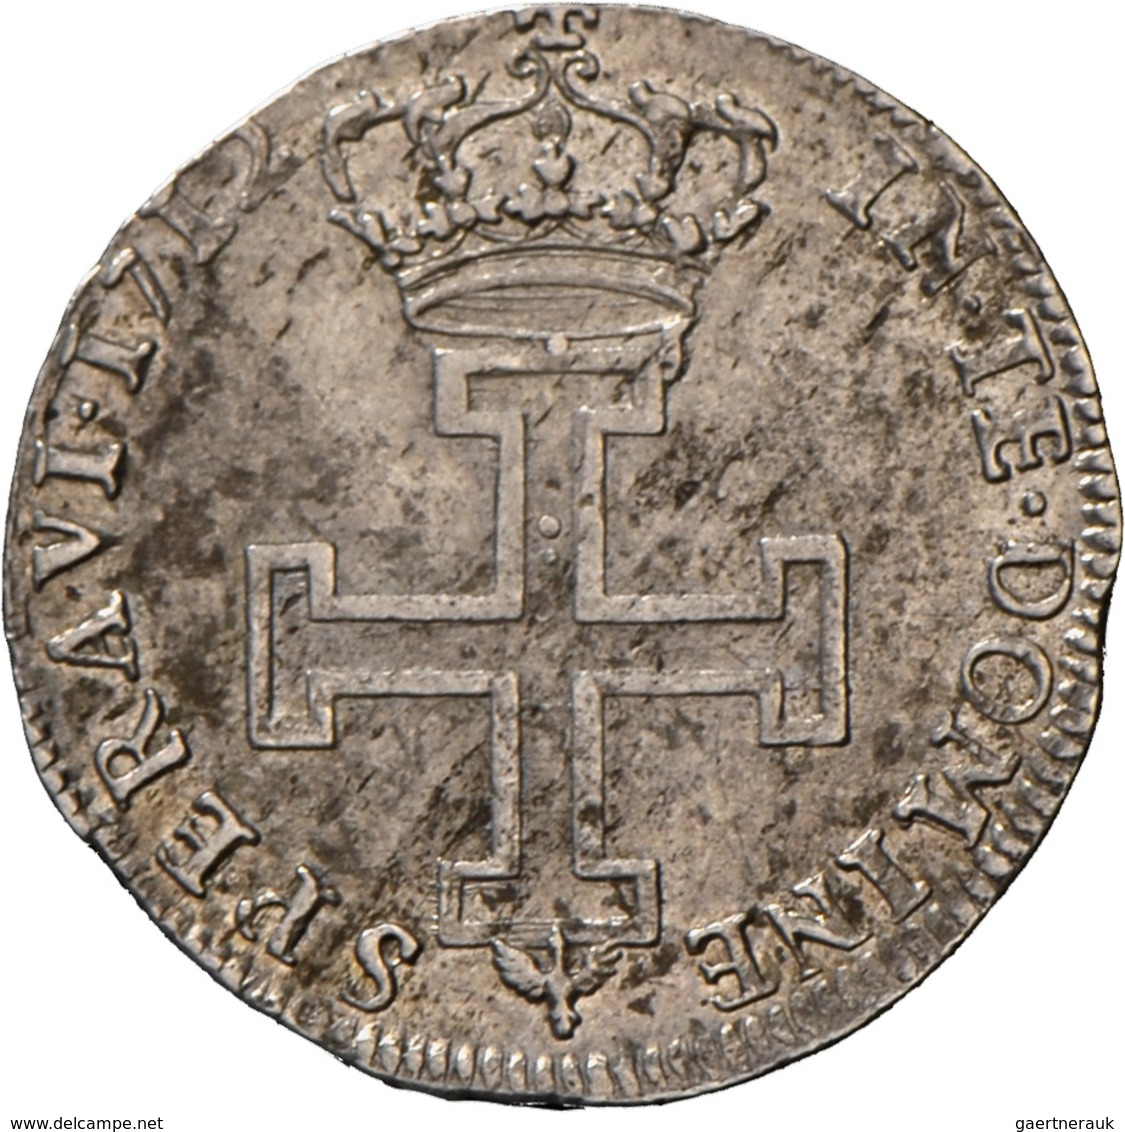 Frankreich: Lothringen, Herzogtum, Leopold I. 1690-1729: Lot 4 Münzen - Teston 1710 auf 1704 überprä